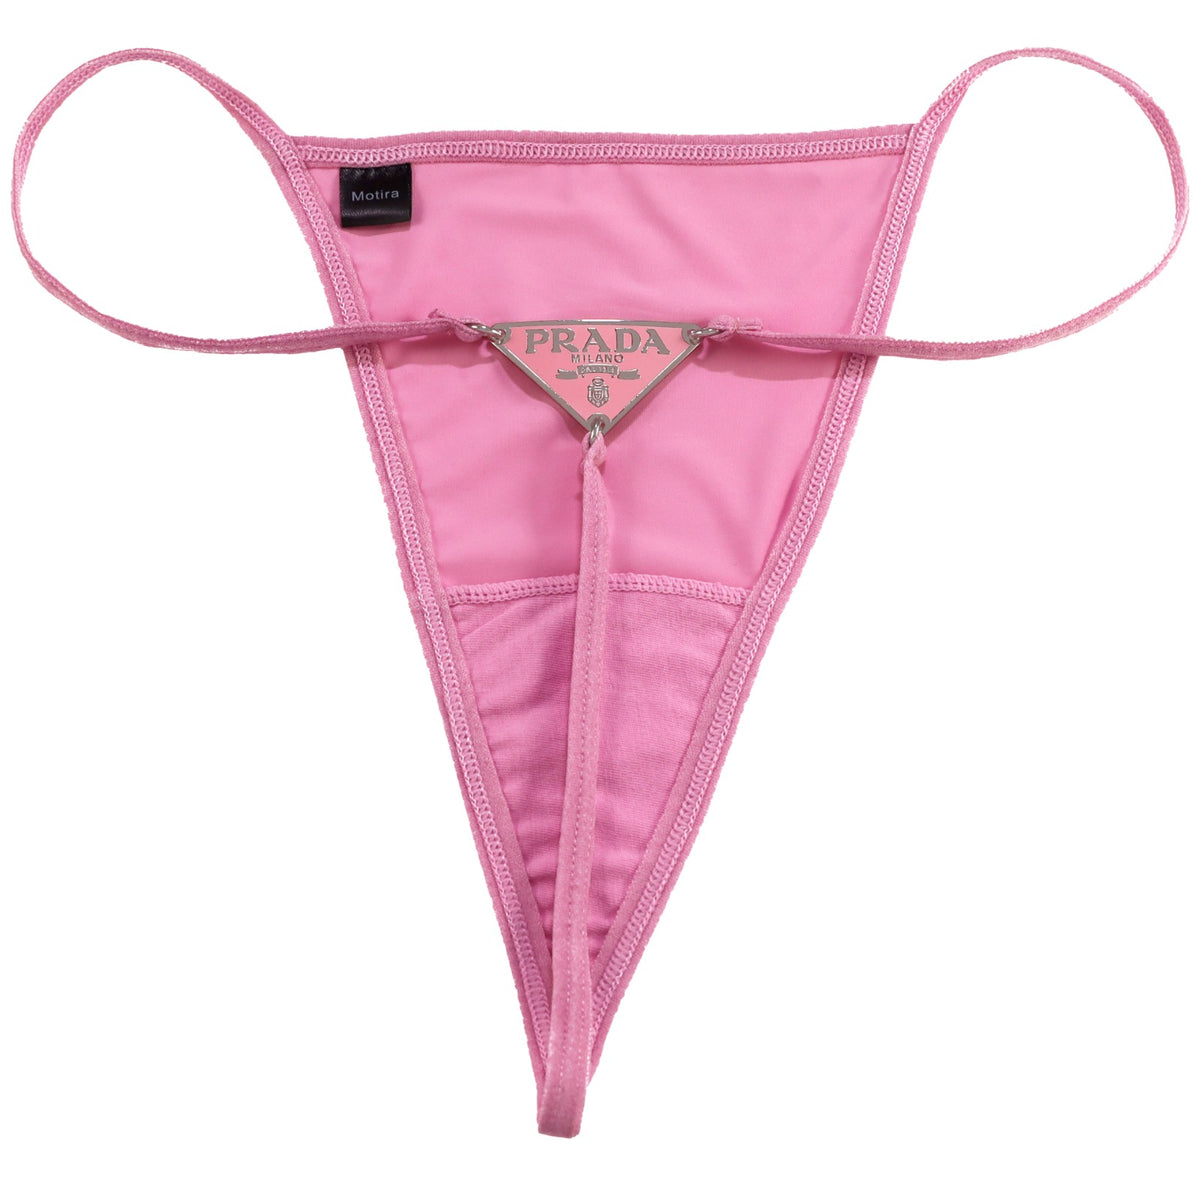 Prada Reworked Thong  Pink – My Next Fit